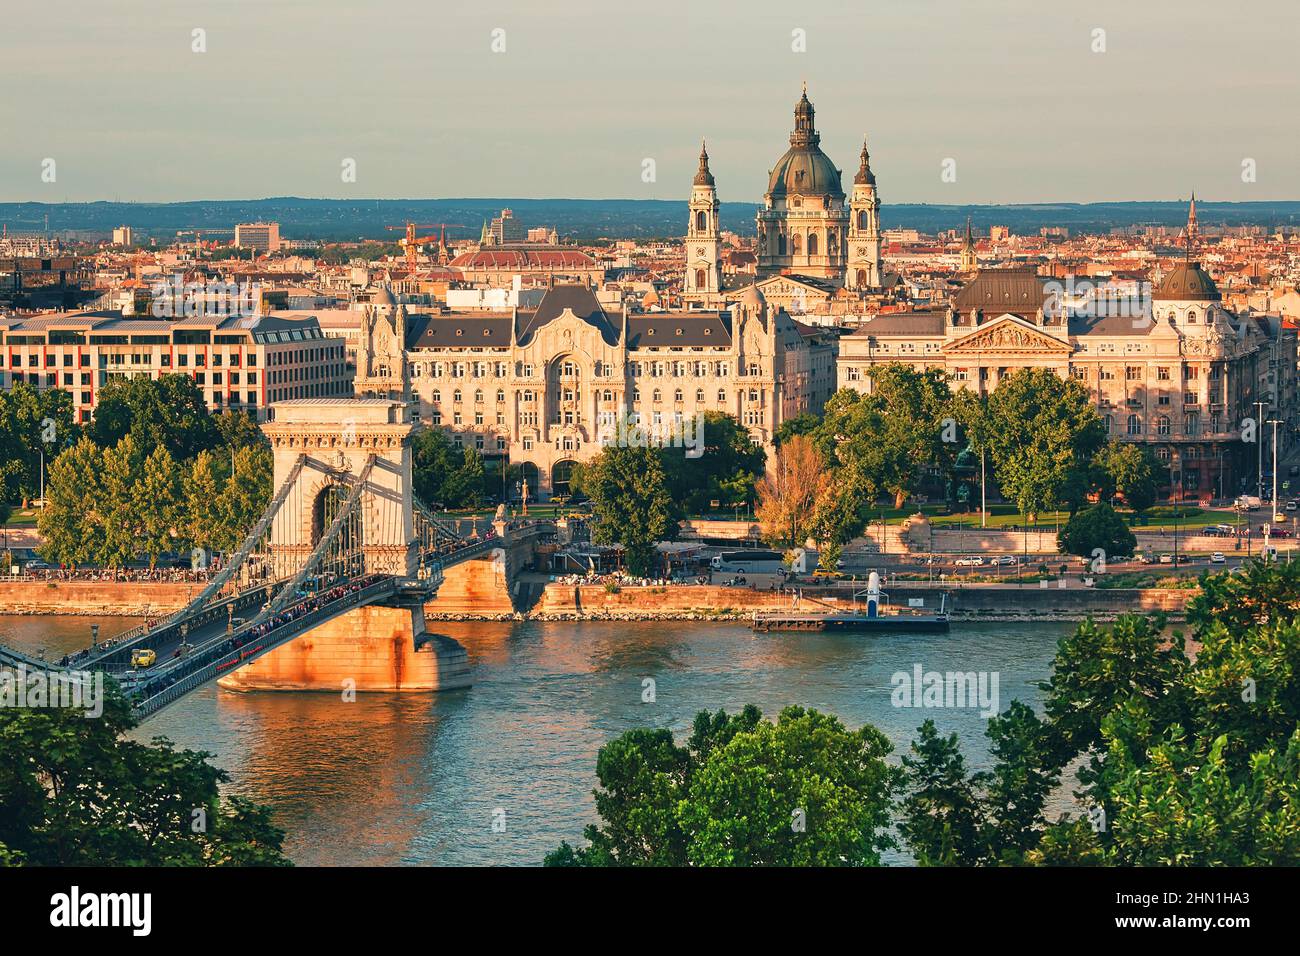 Vue sur le centre-ville de Budapest, sur le Danube, magnifique paysage urbain au coucher du soleil Banque D'Images